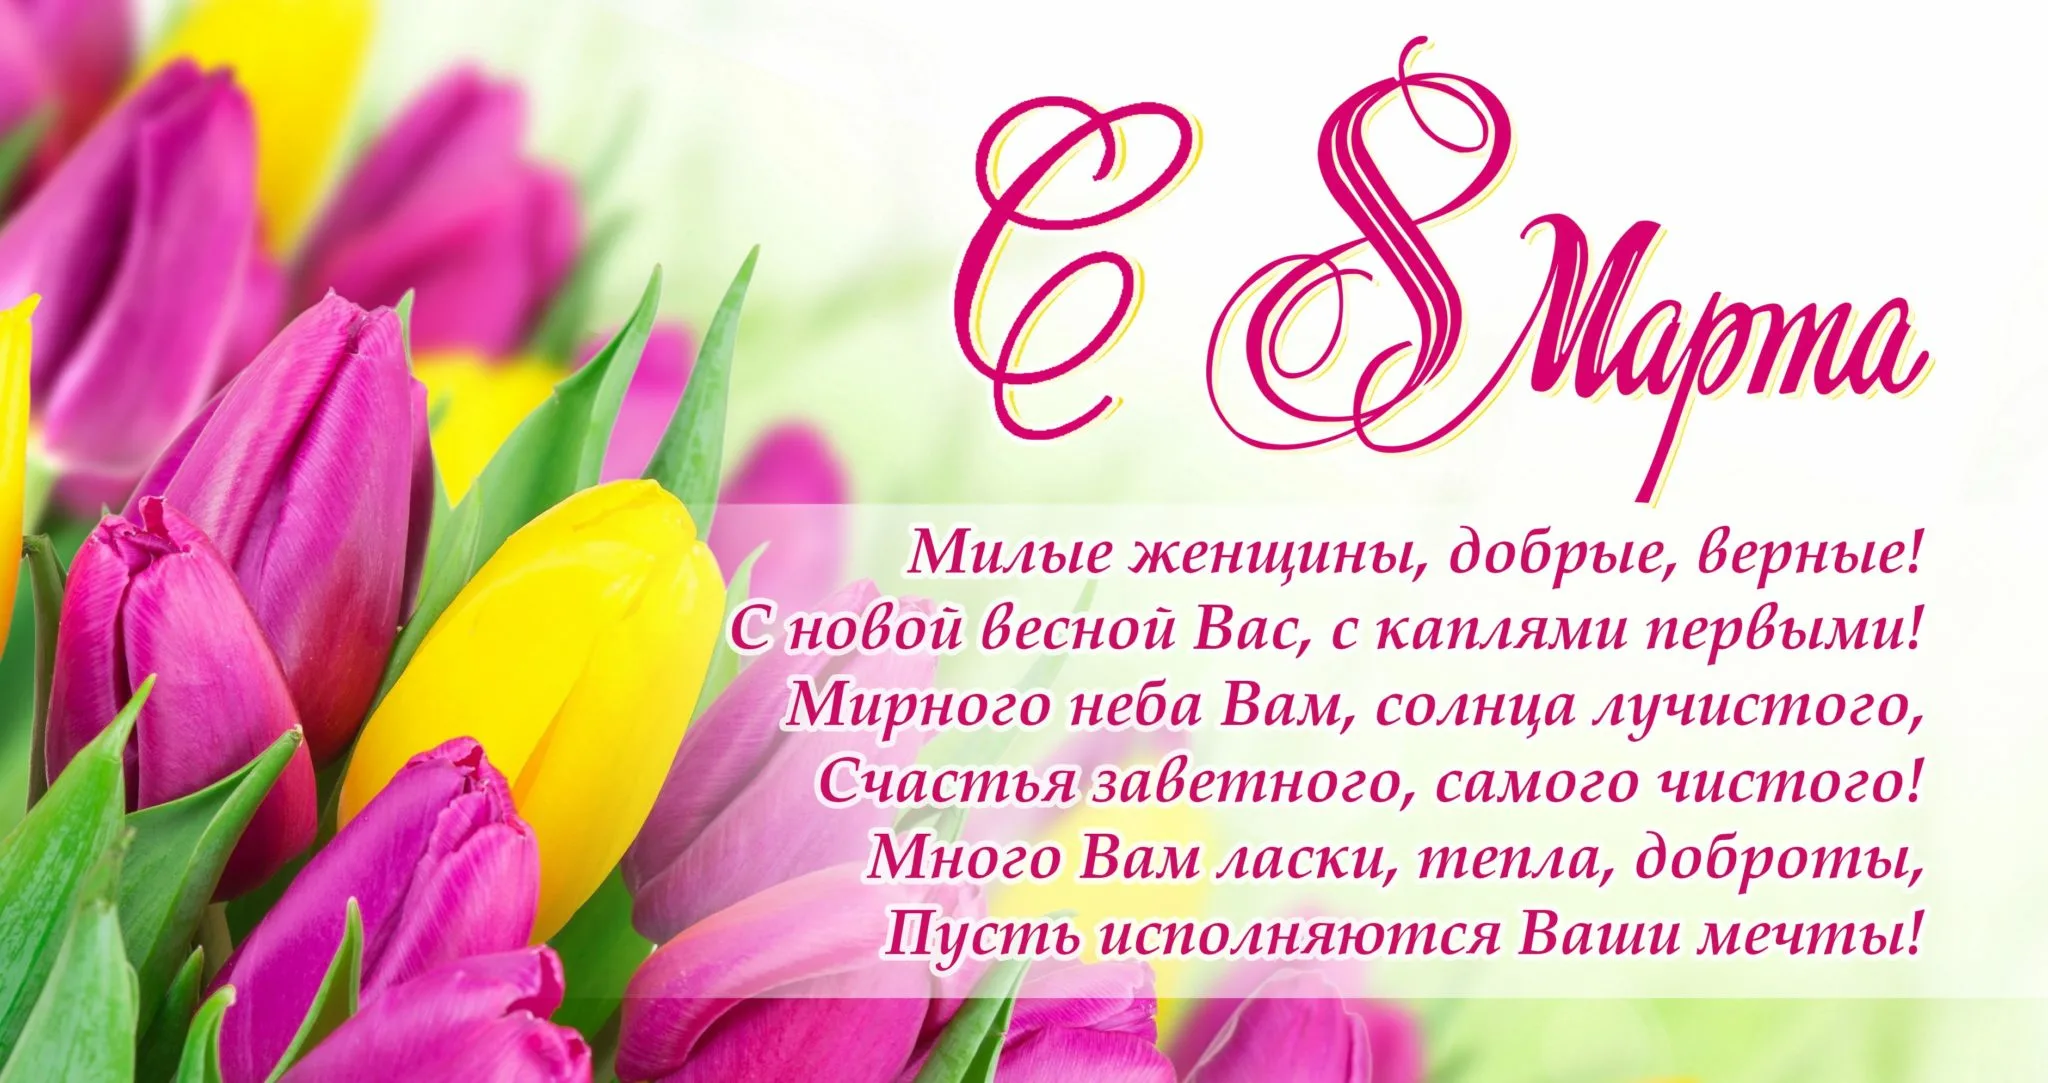 Фото Поздравления с 8 Марта на казахском языке с переводом на русский #64